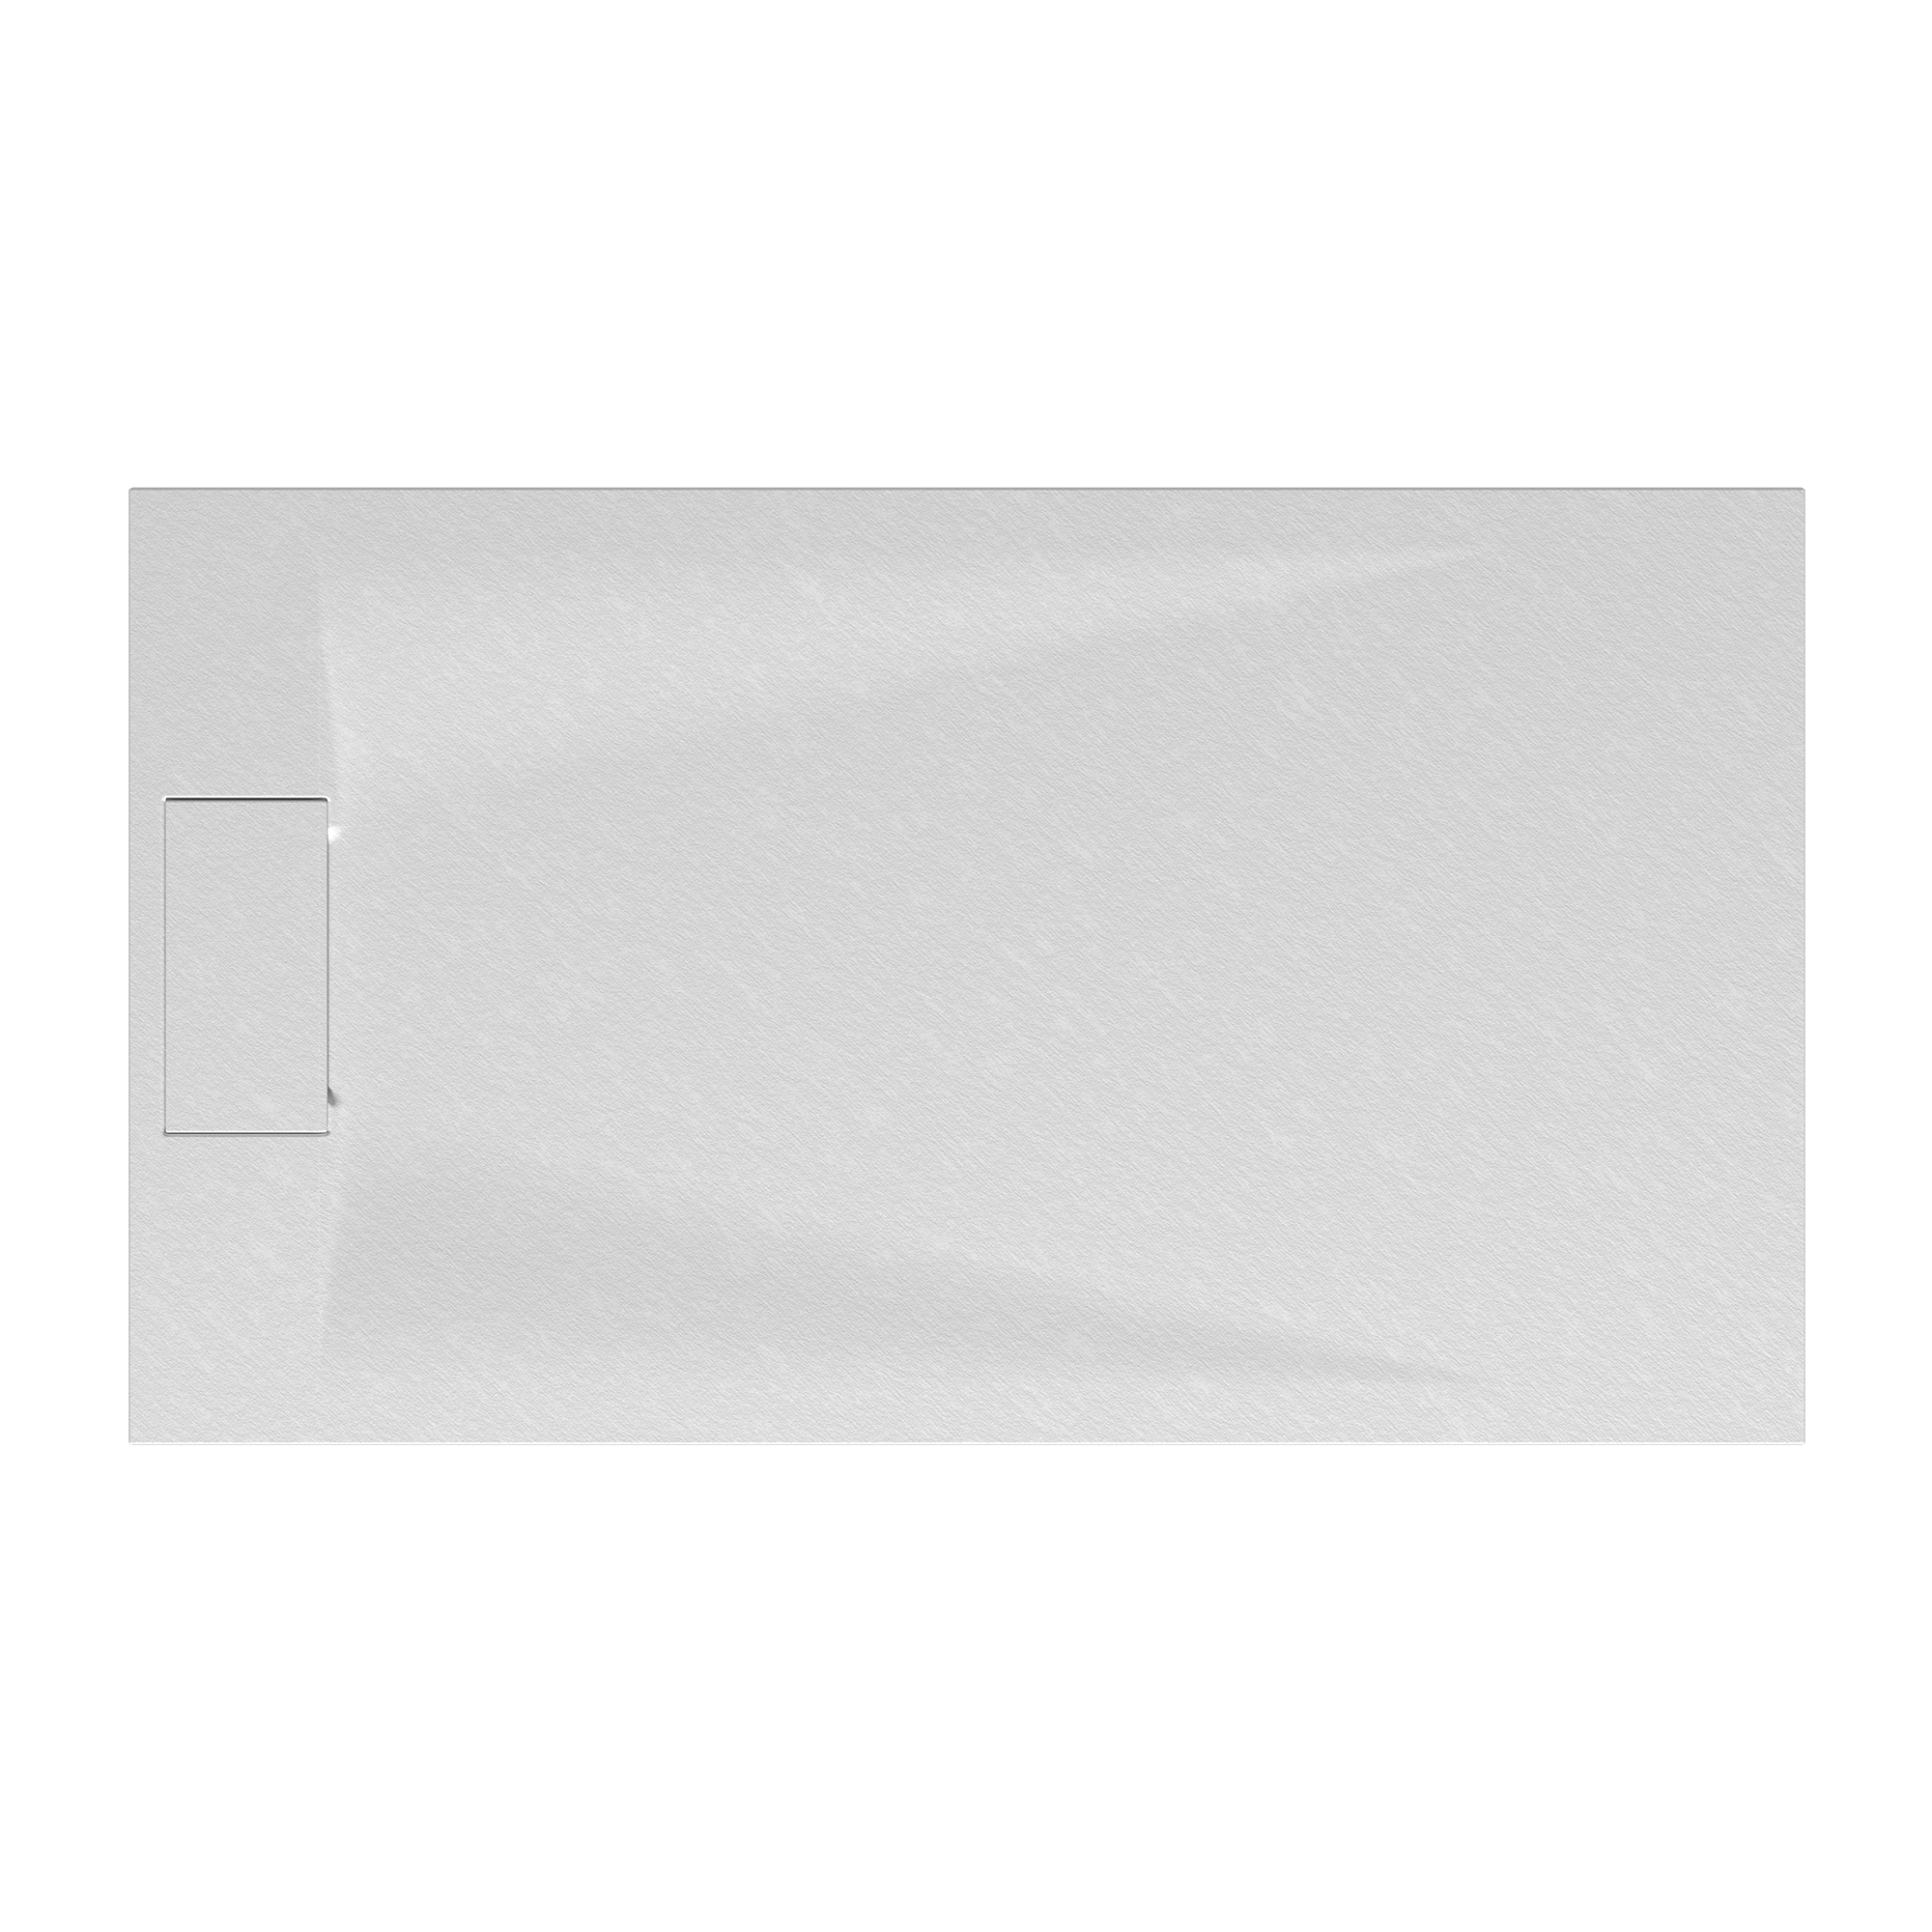 Duschwanne 'Lite Line/Quick72' Steinoptik weiß 80 x 120 cm + product picture